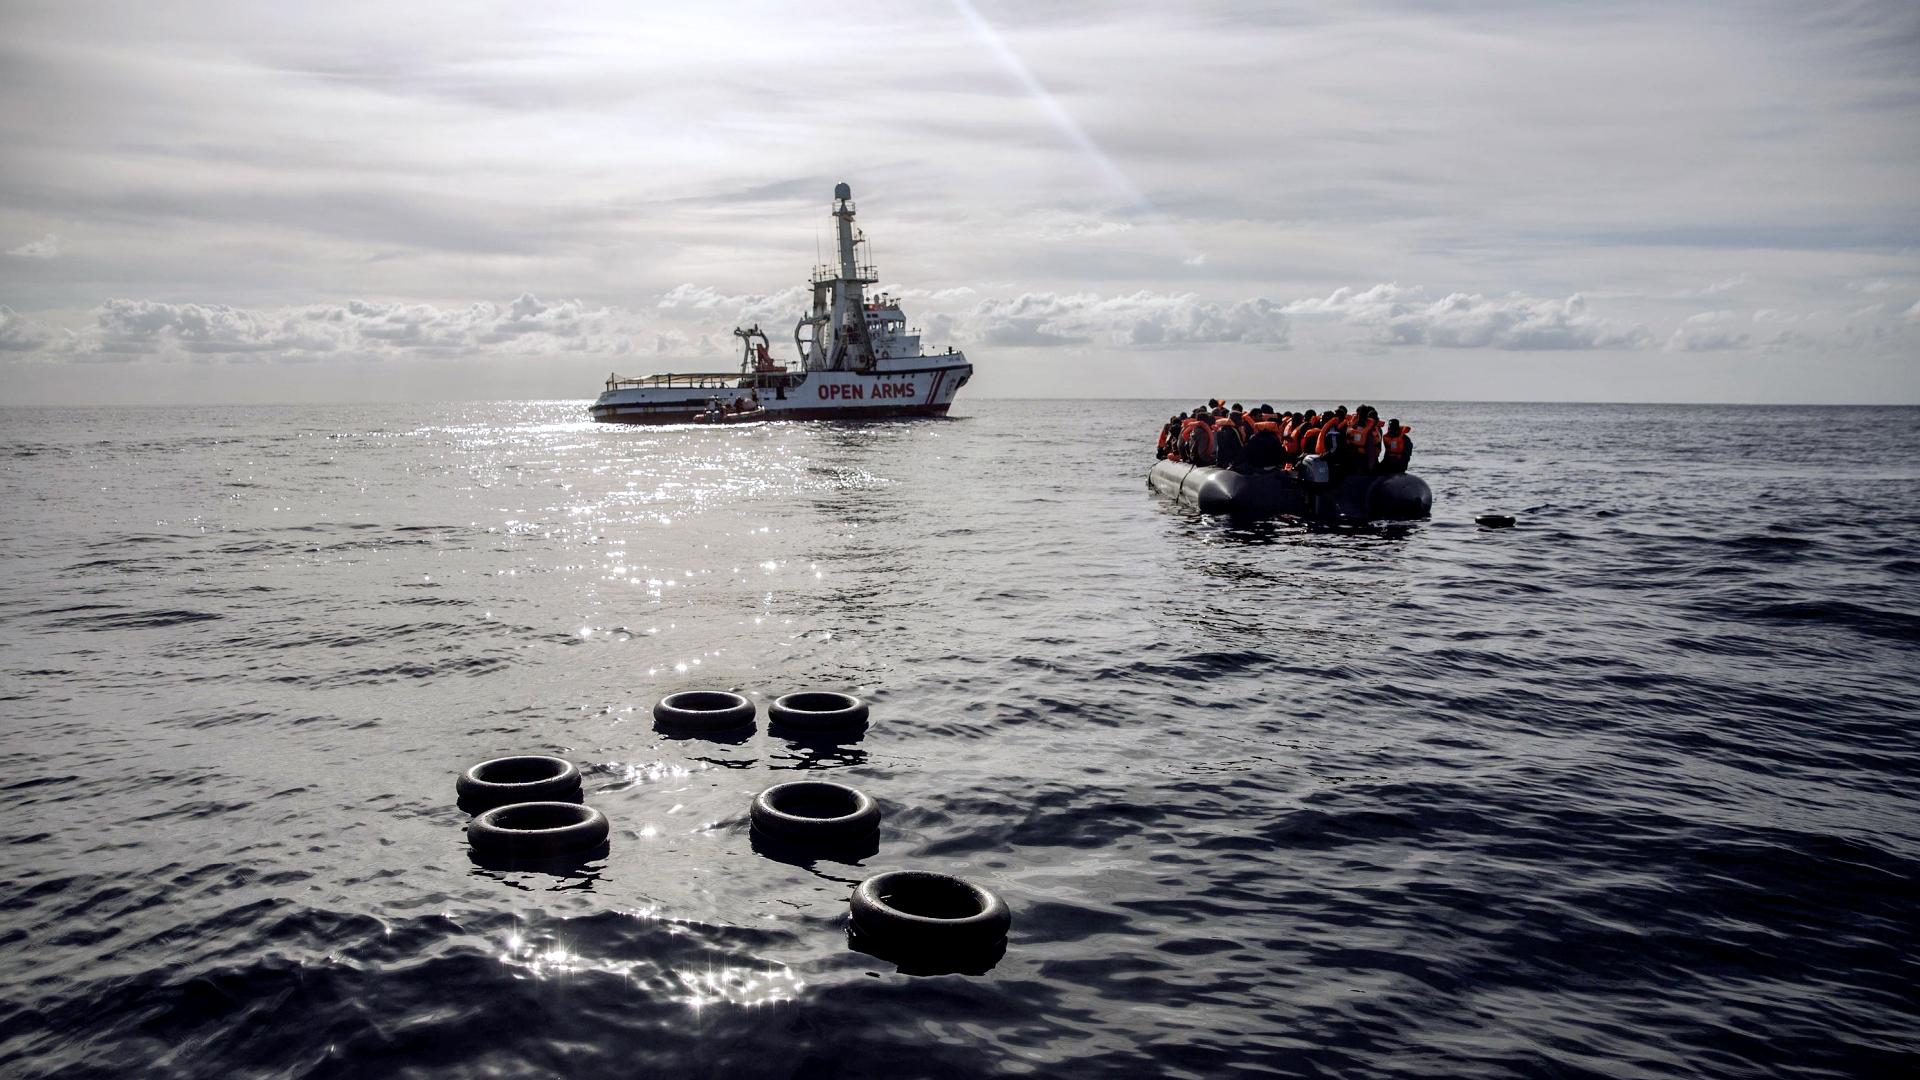 Archivbild: Migranten sitzen in einem Schlauchboot. | dpa